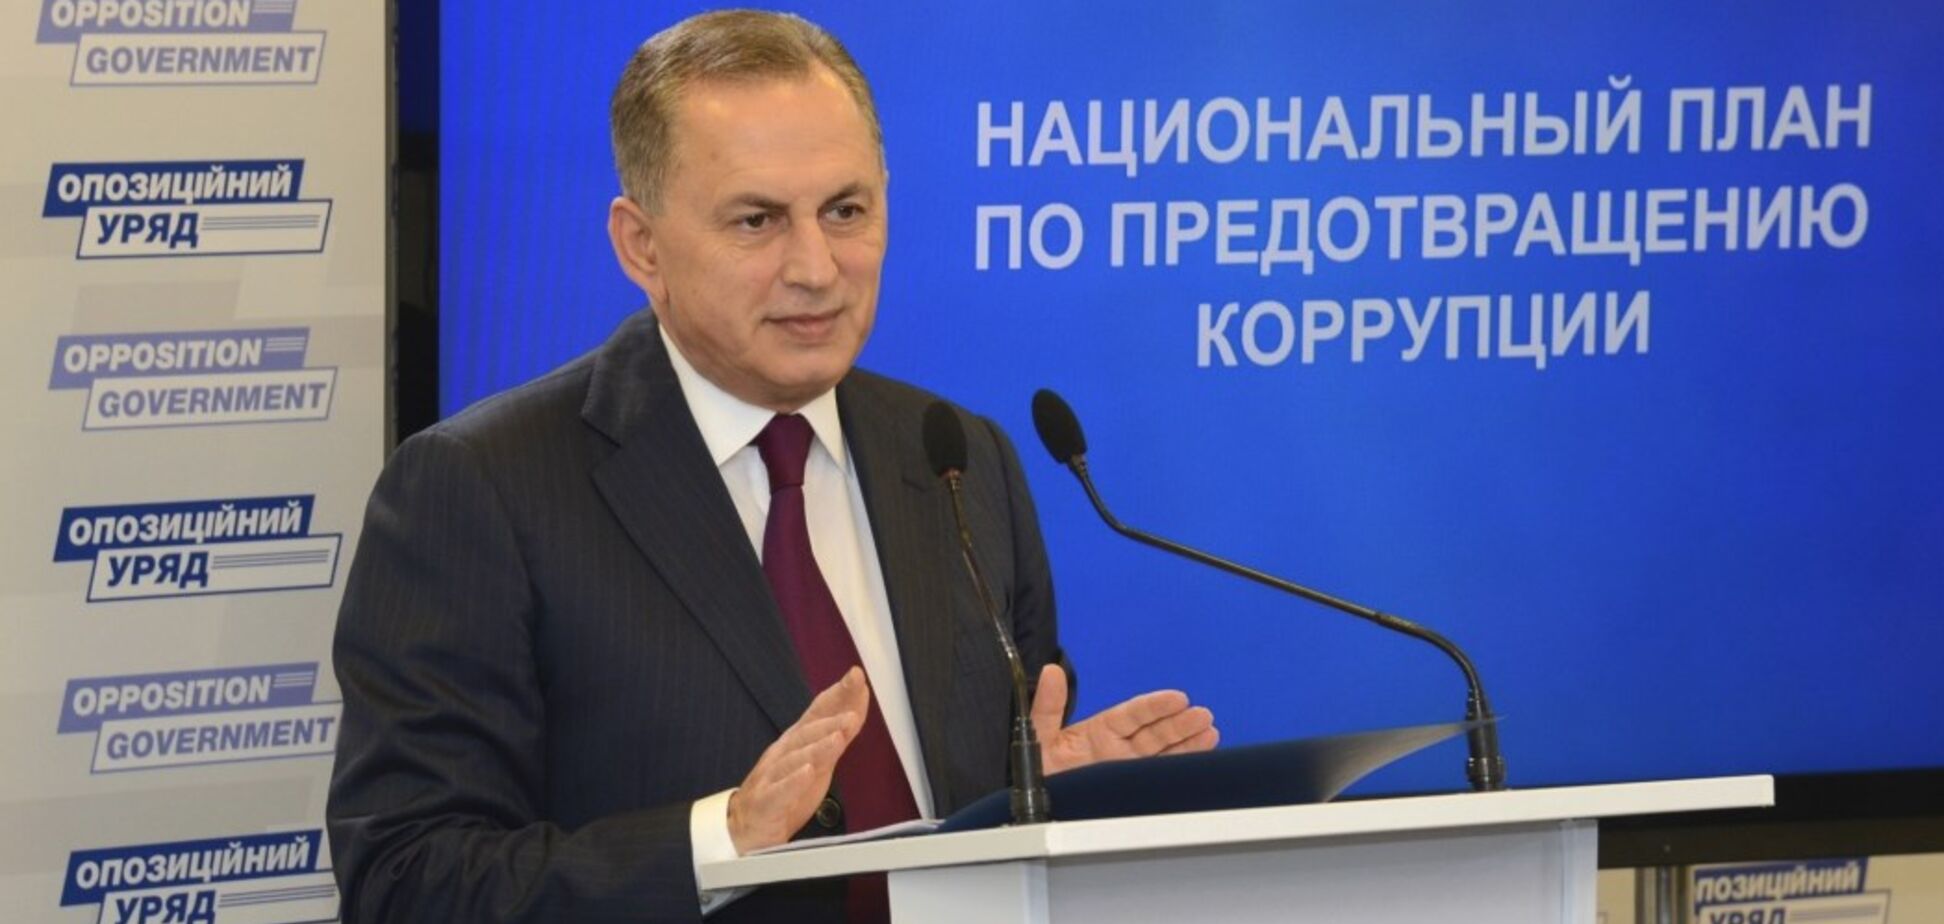 'Визначити головні осередки': Колесніков презентував план боротьби з корупцією